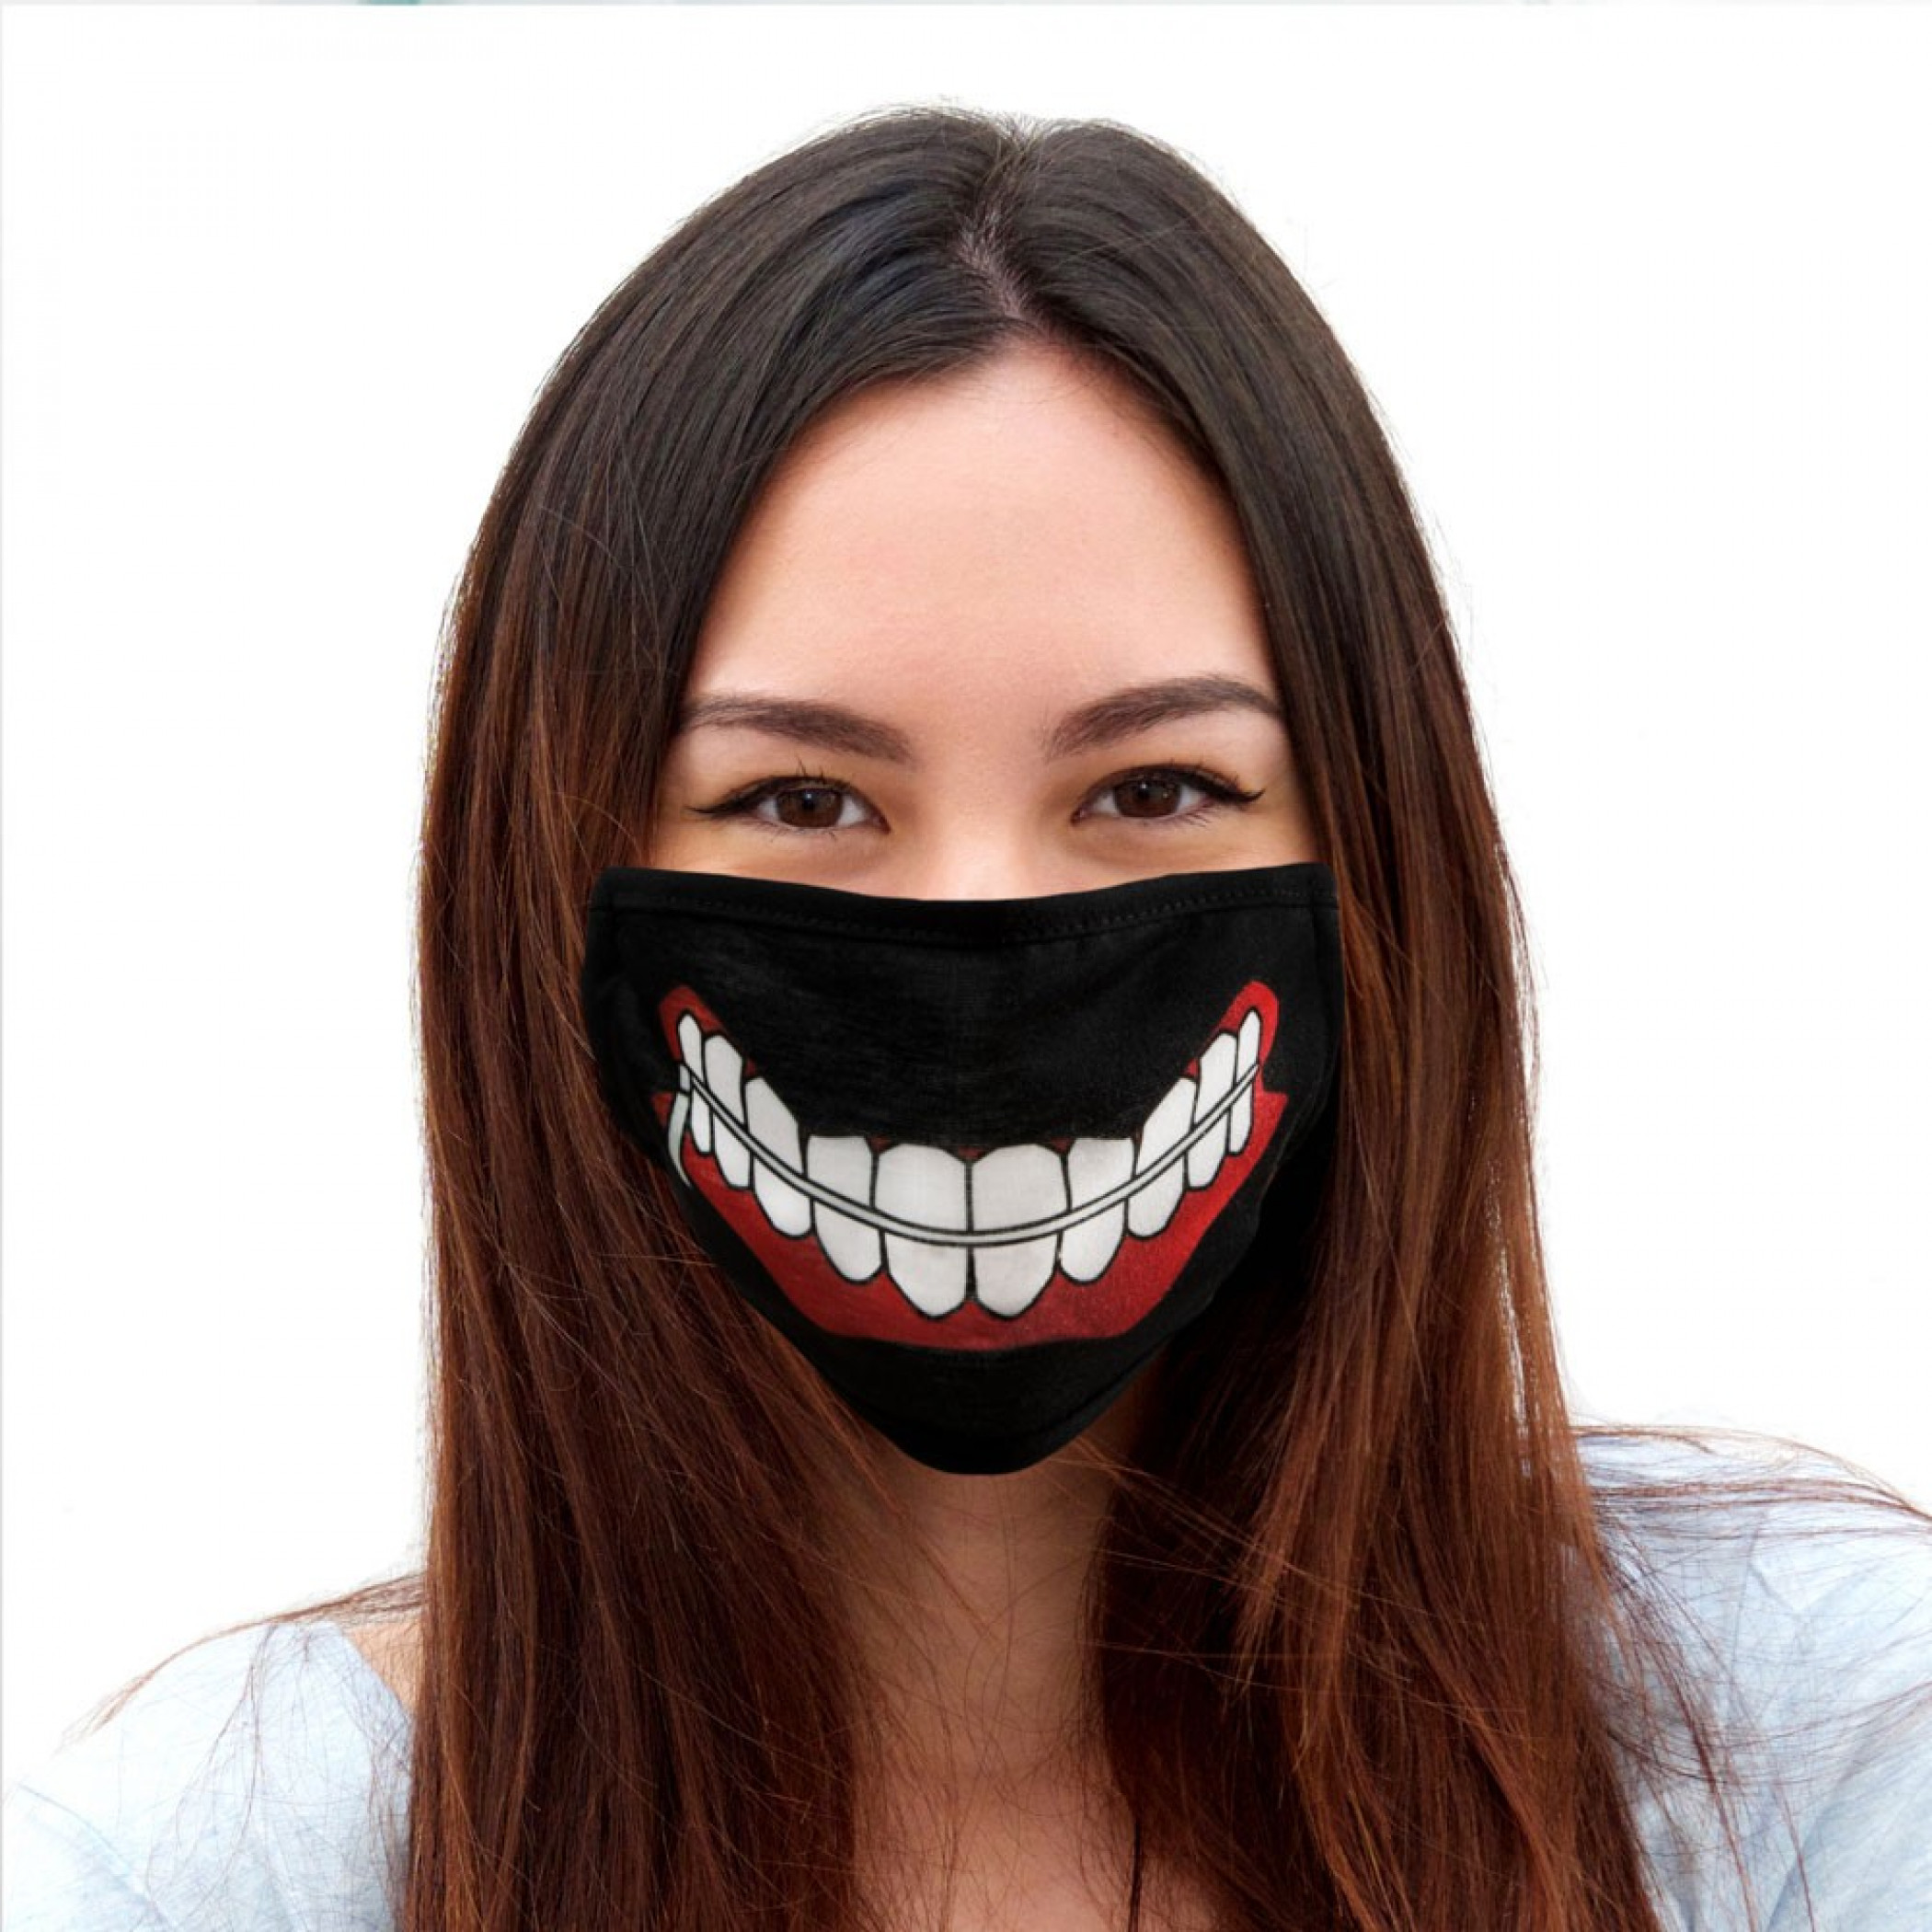 Tokyo Ghoul Ken Mask Adjustable Cover